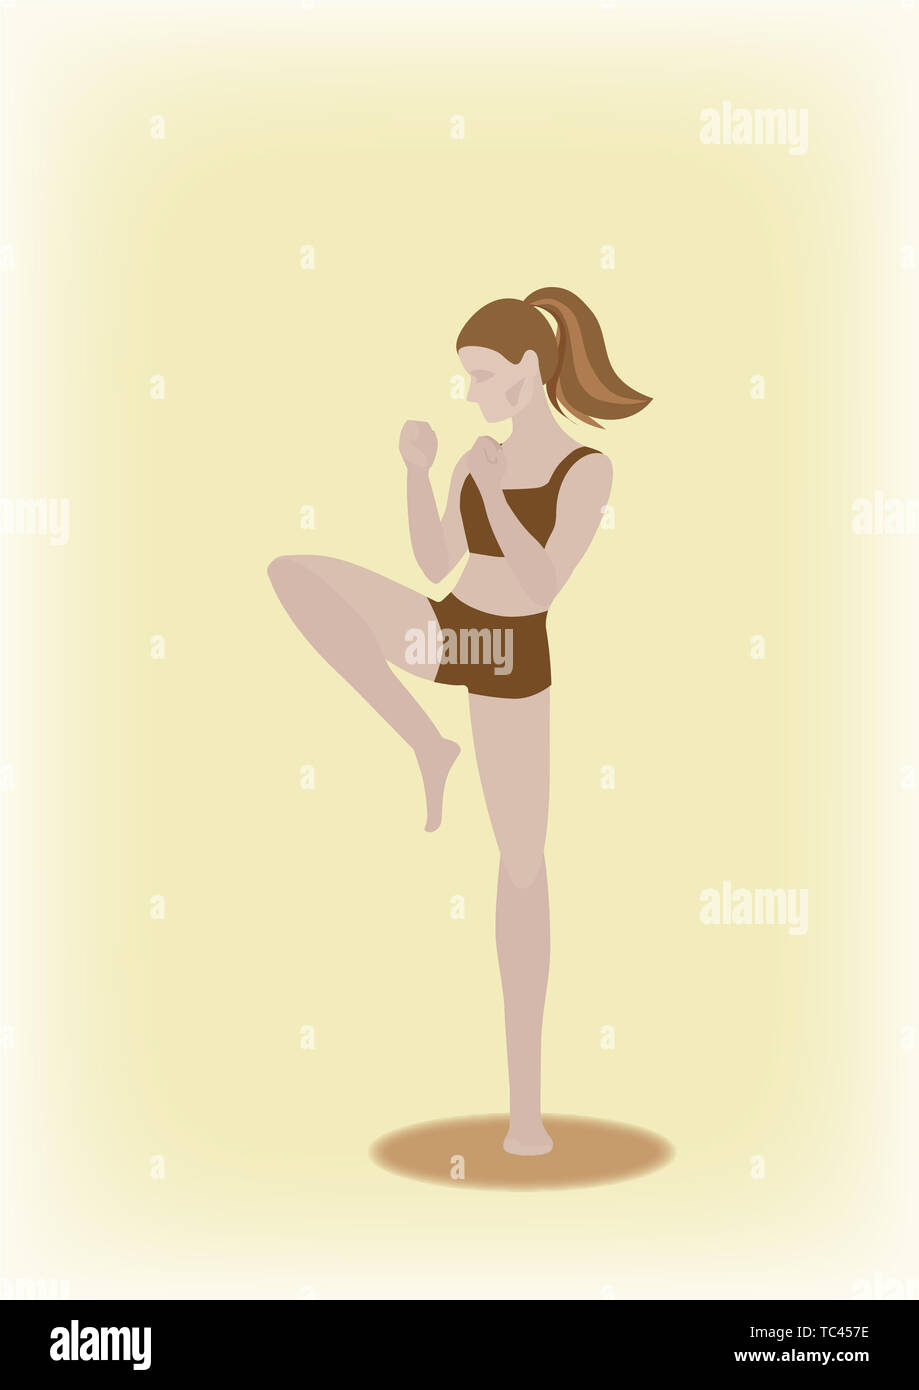 Light yellow background wrestling exercise ponytail girl illustration Stock Photo